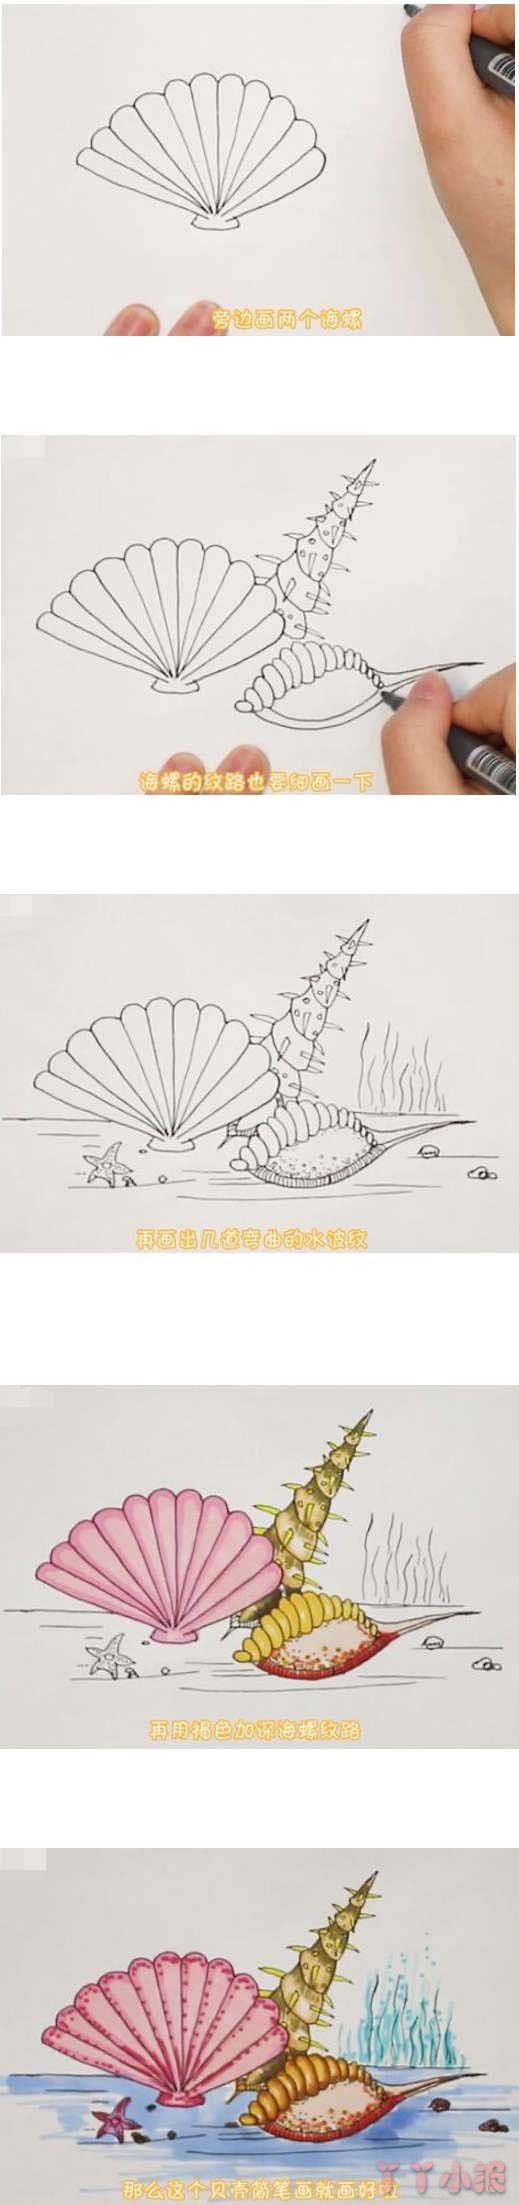 海洋贝壳手绘怎么画涂色简单漂亮步骤图